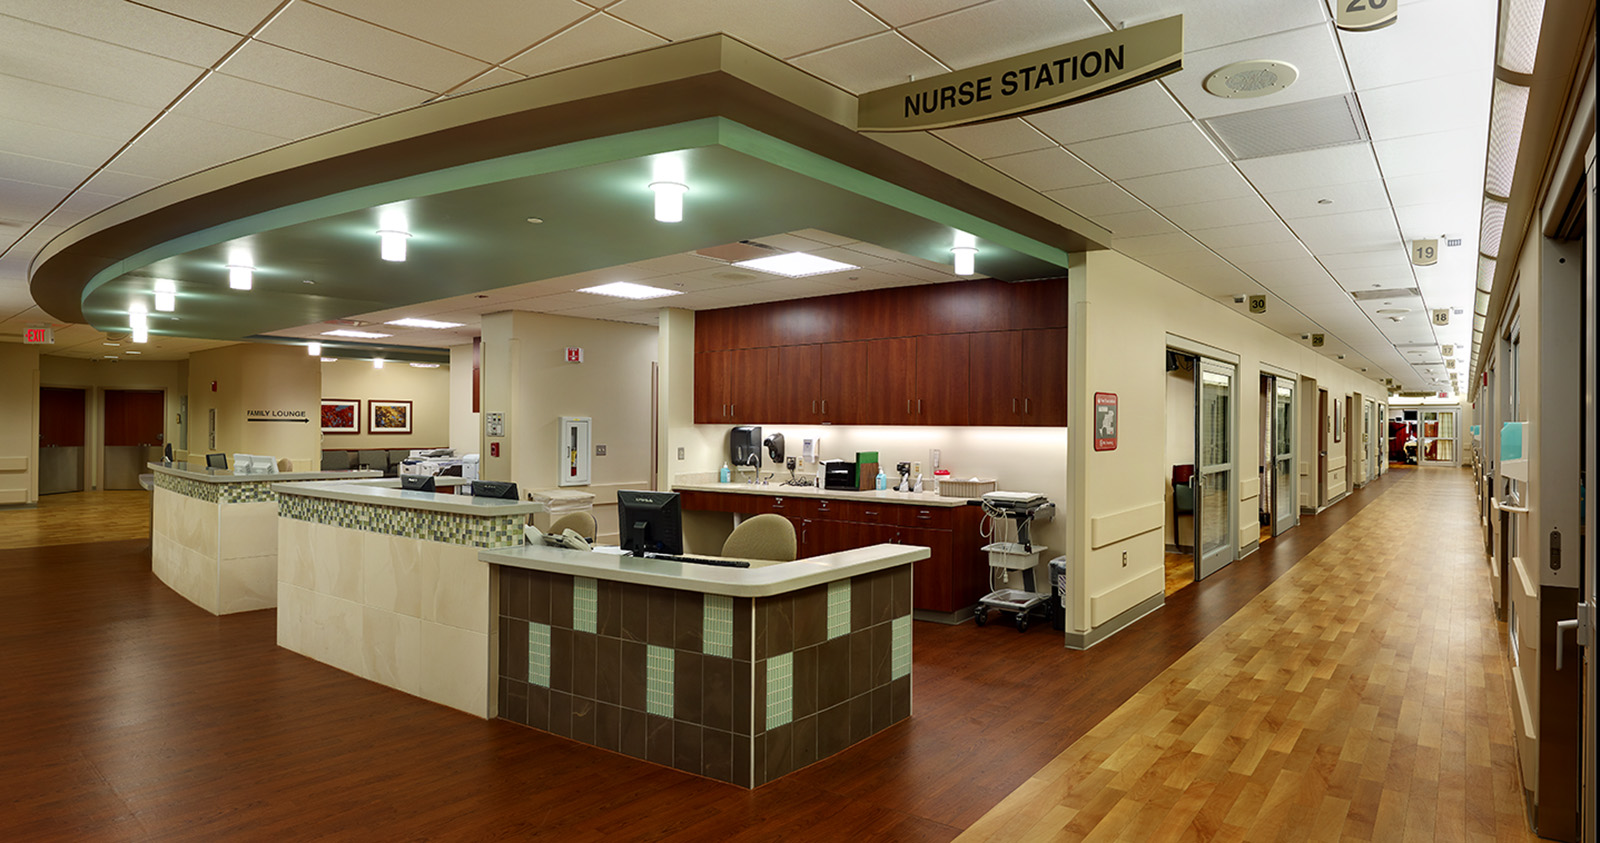 oakwood-heritage-hospital-nurse-station